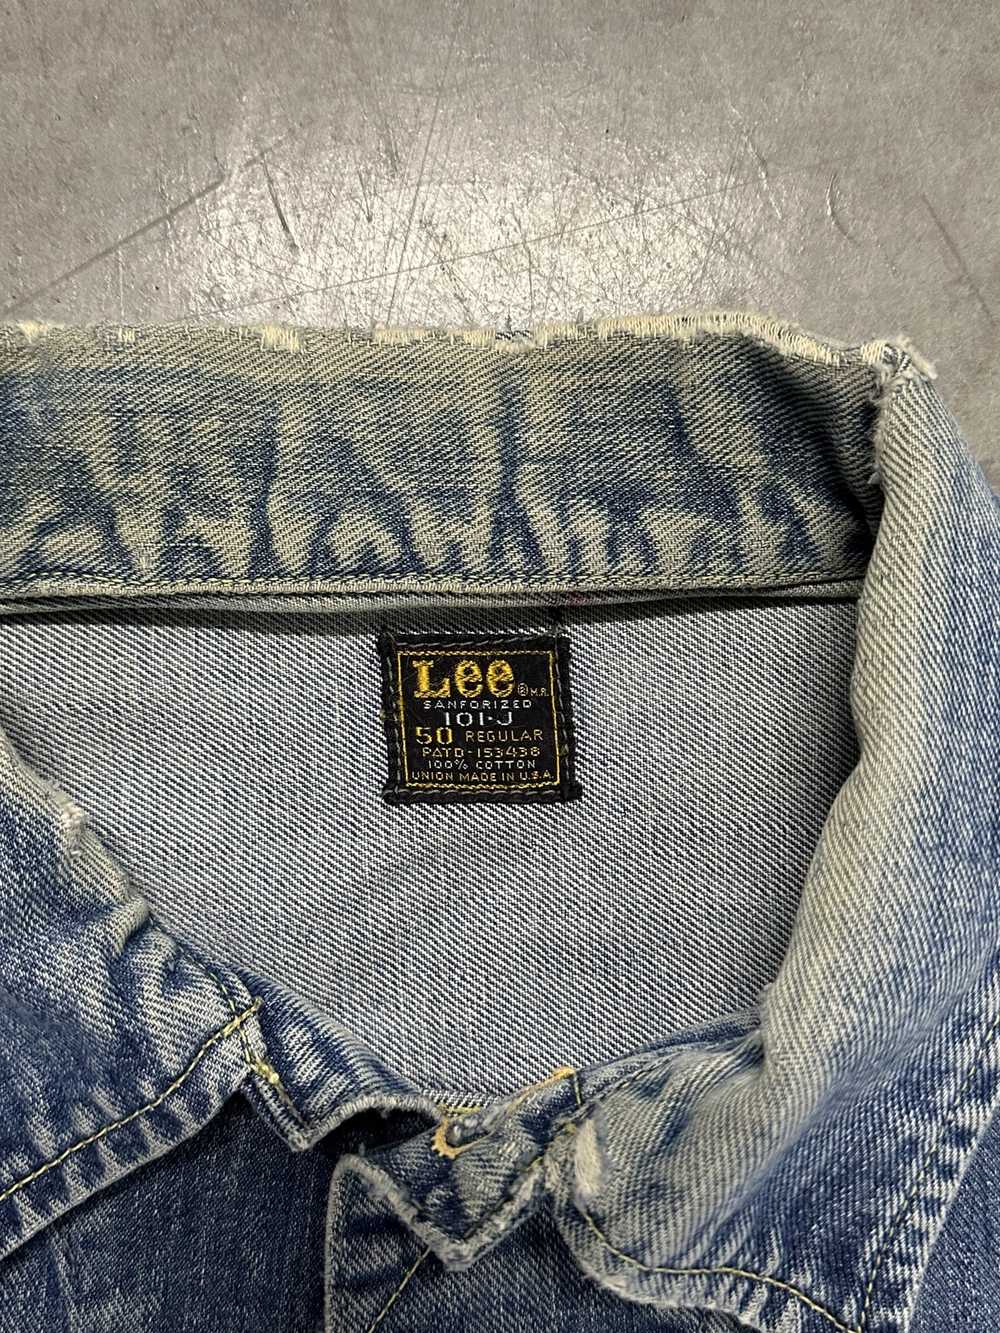 Lee × Streetwear × Vintage 70s Lee Denim Jacket - image 3